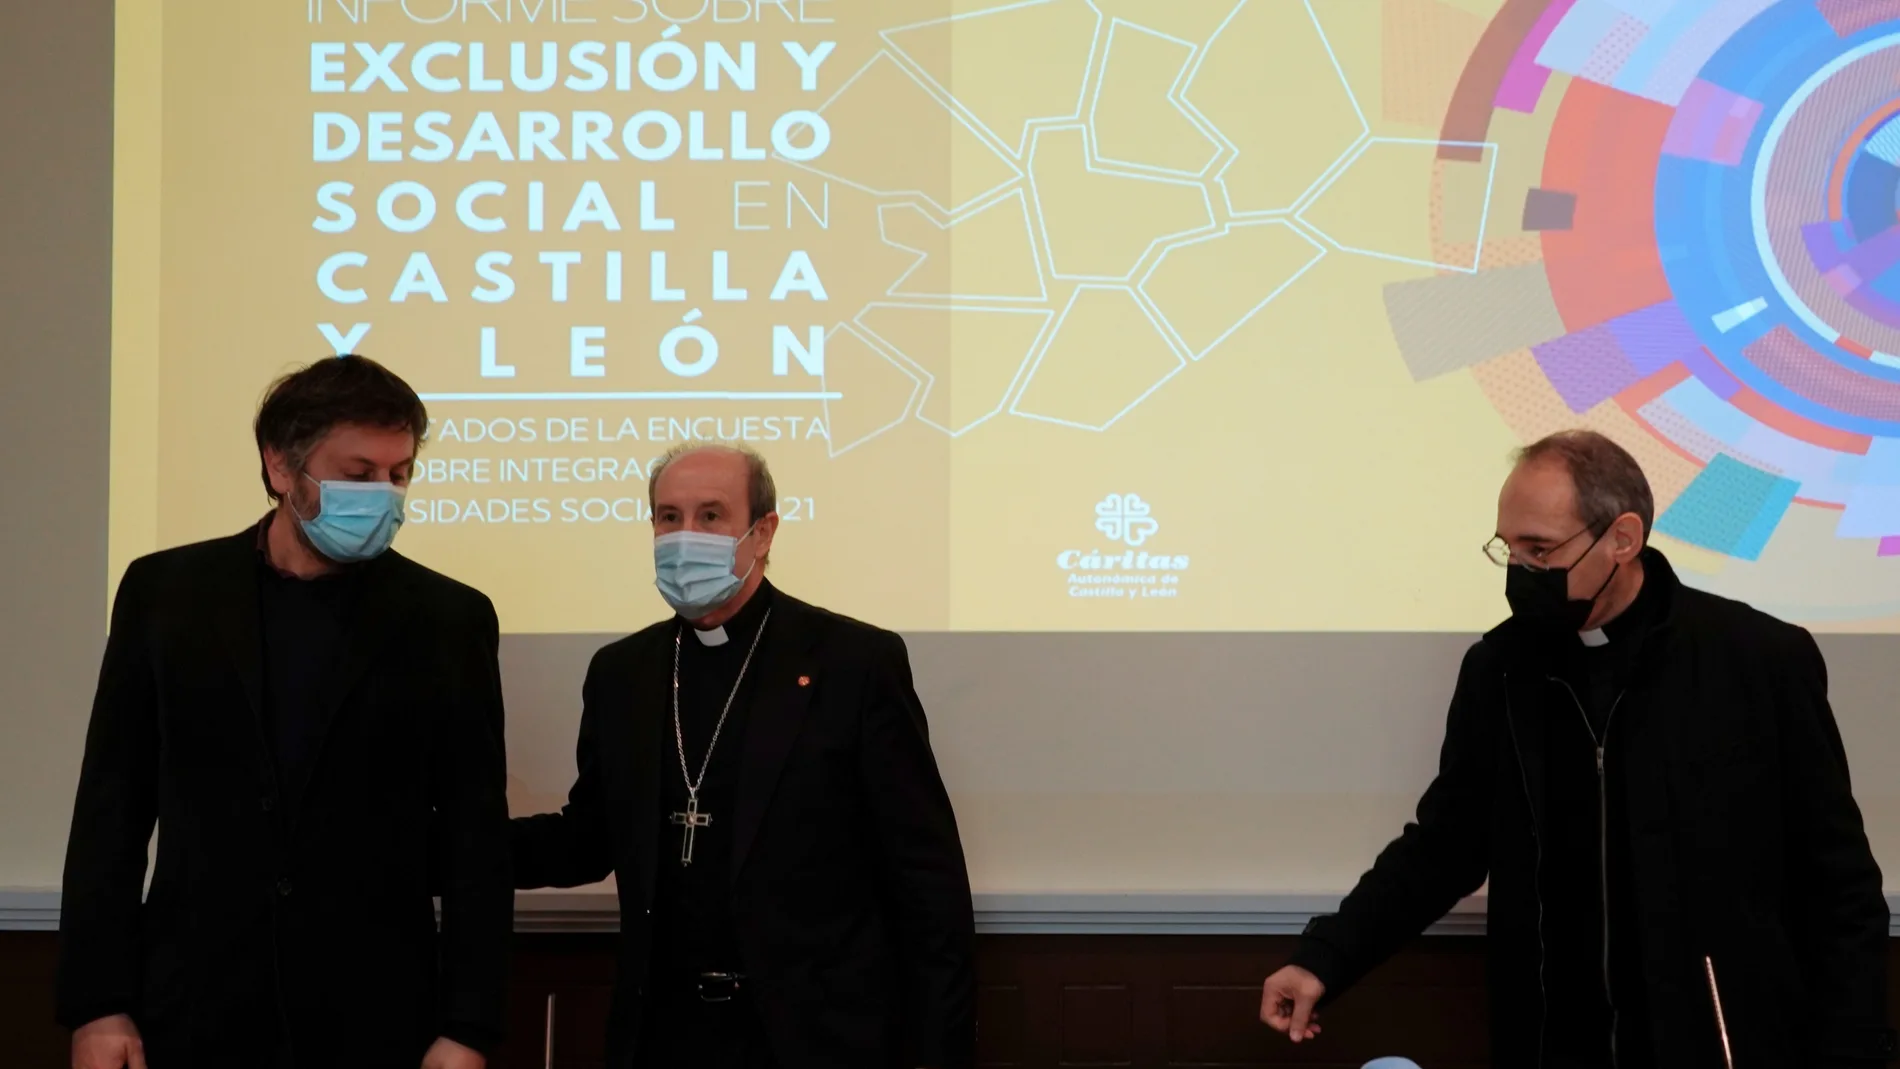 El obispo de Astorga, Jesús Fernández; el presidente de Cáritas Autonómica, Antonio J. Martín de Lera, y Thomas Frederic Ubrich, miembro del Comité técnico de la Fundación Foessa, presentan el informe